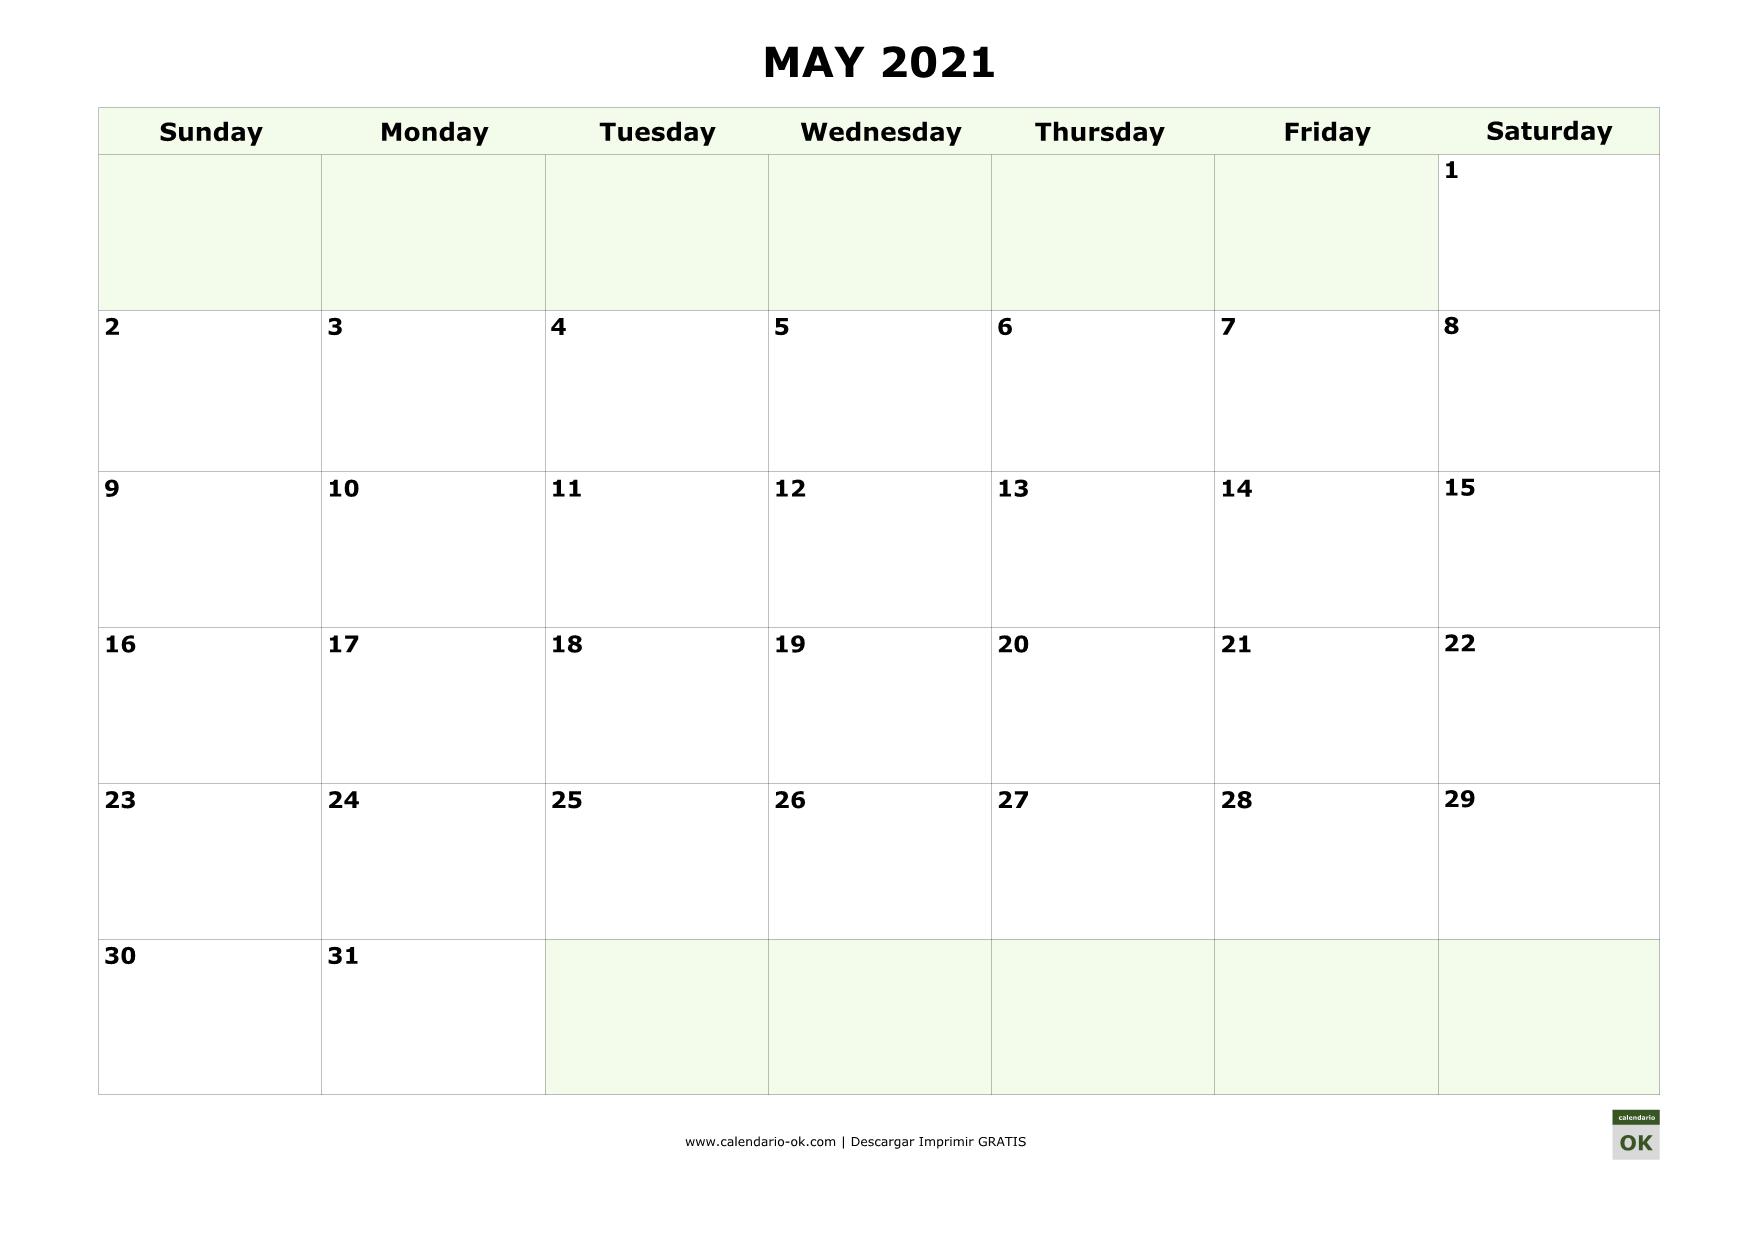 MAYO 2021 calendario en INGLES empieza por DOMINGO